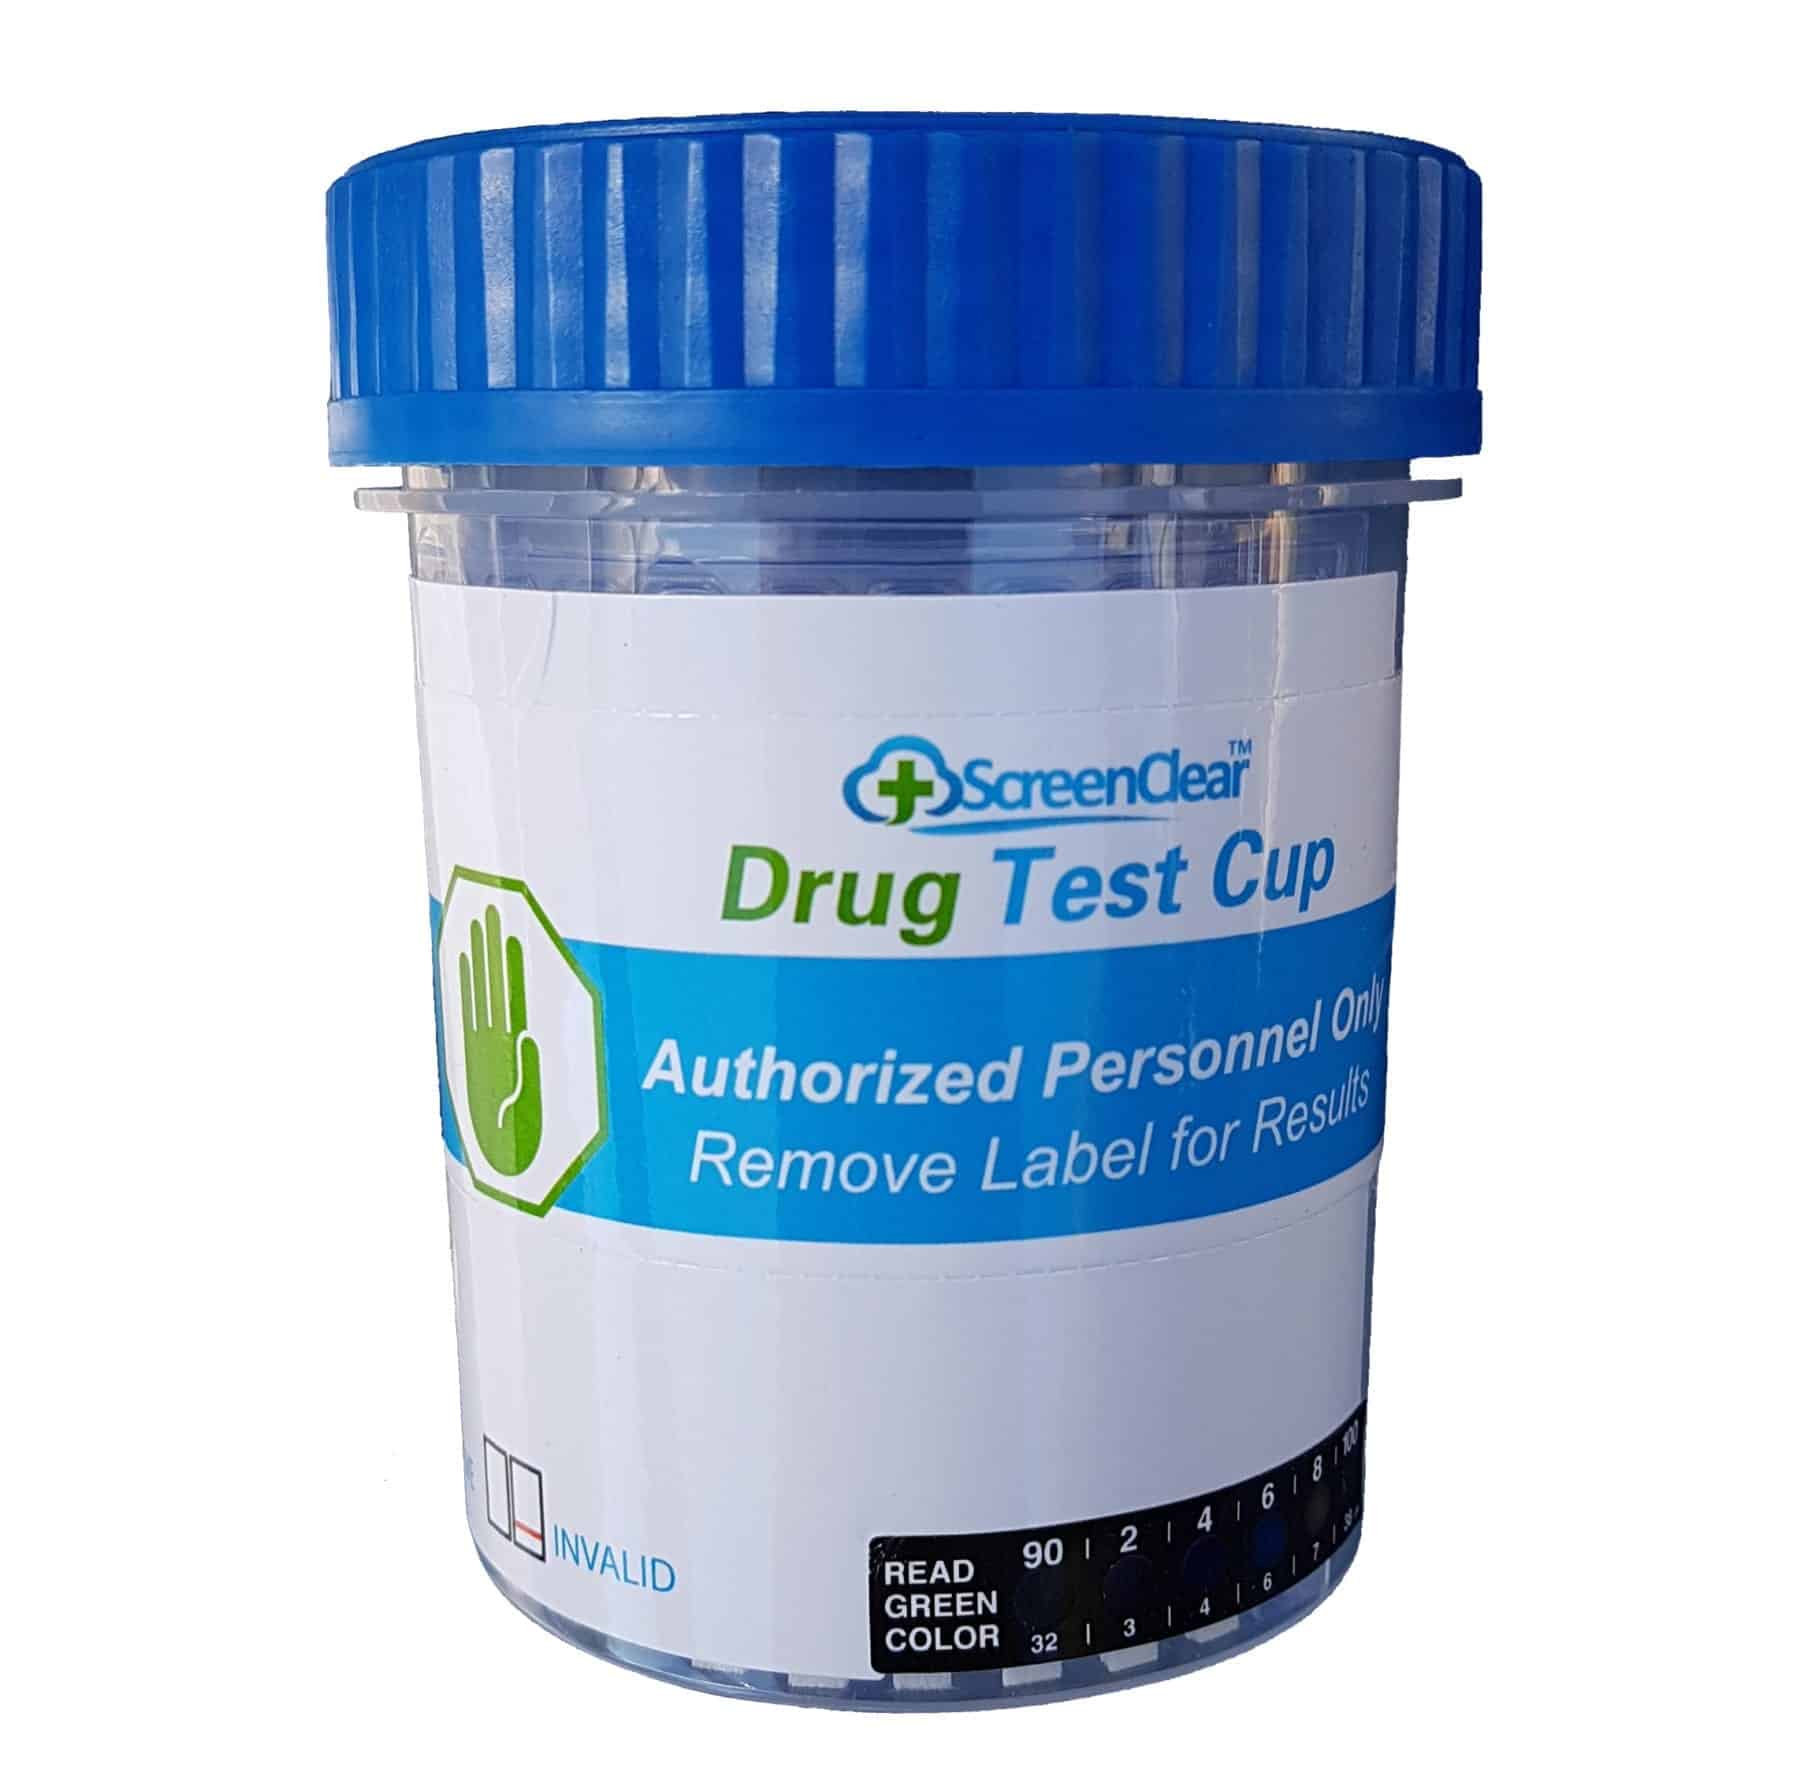 Urine drug Testing handing specimen. Cup testing